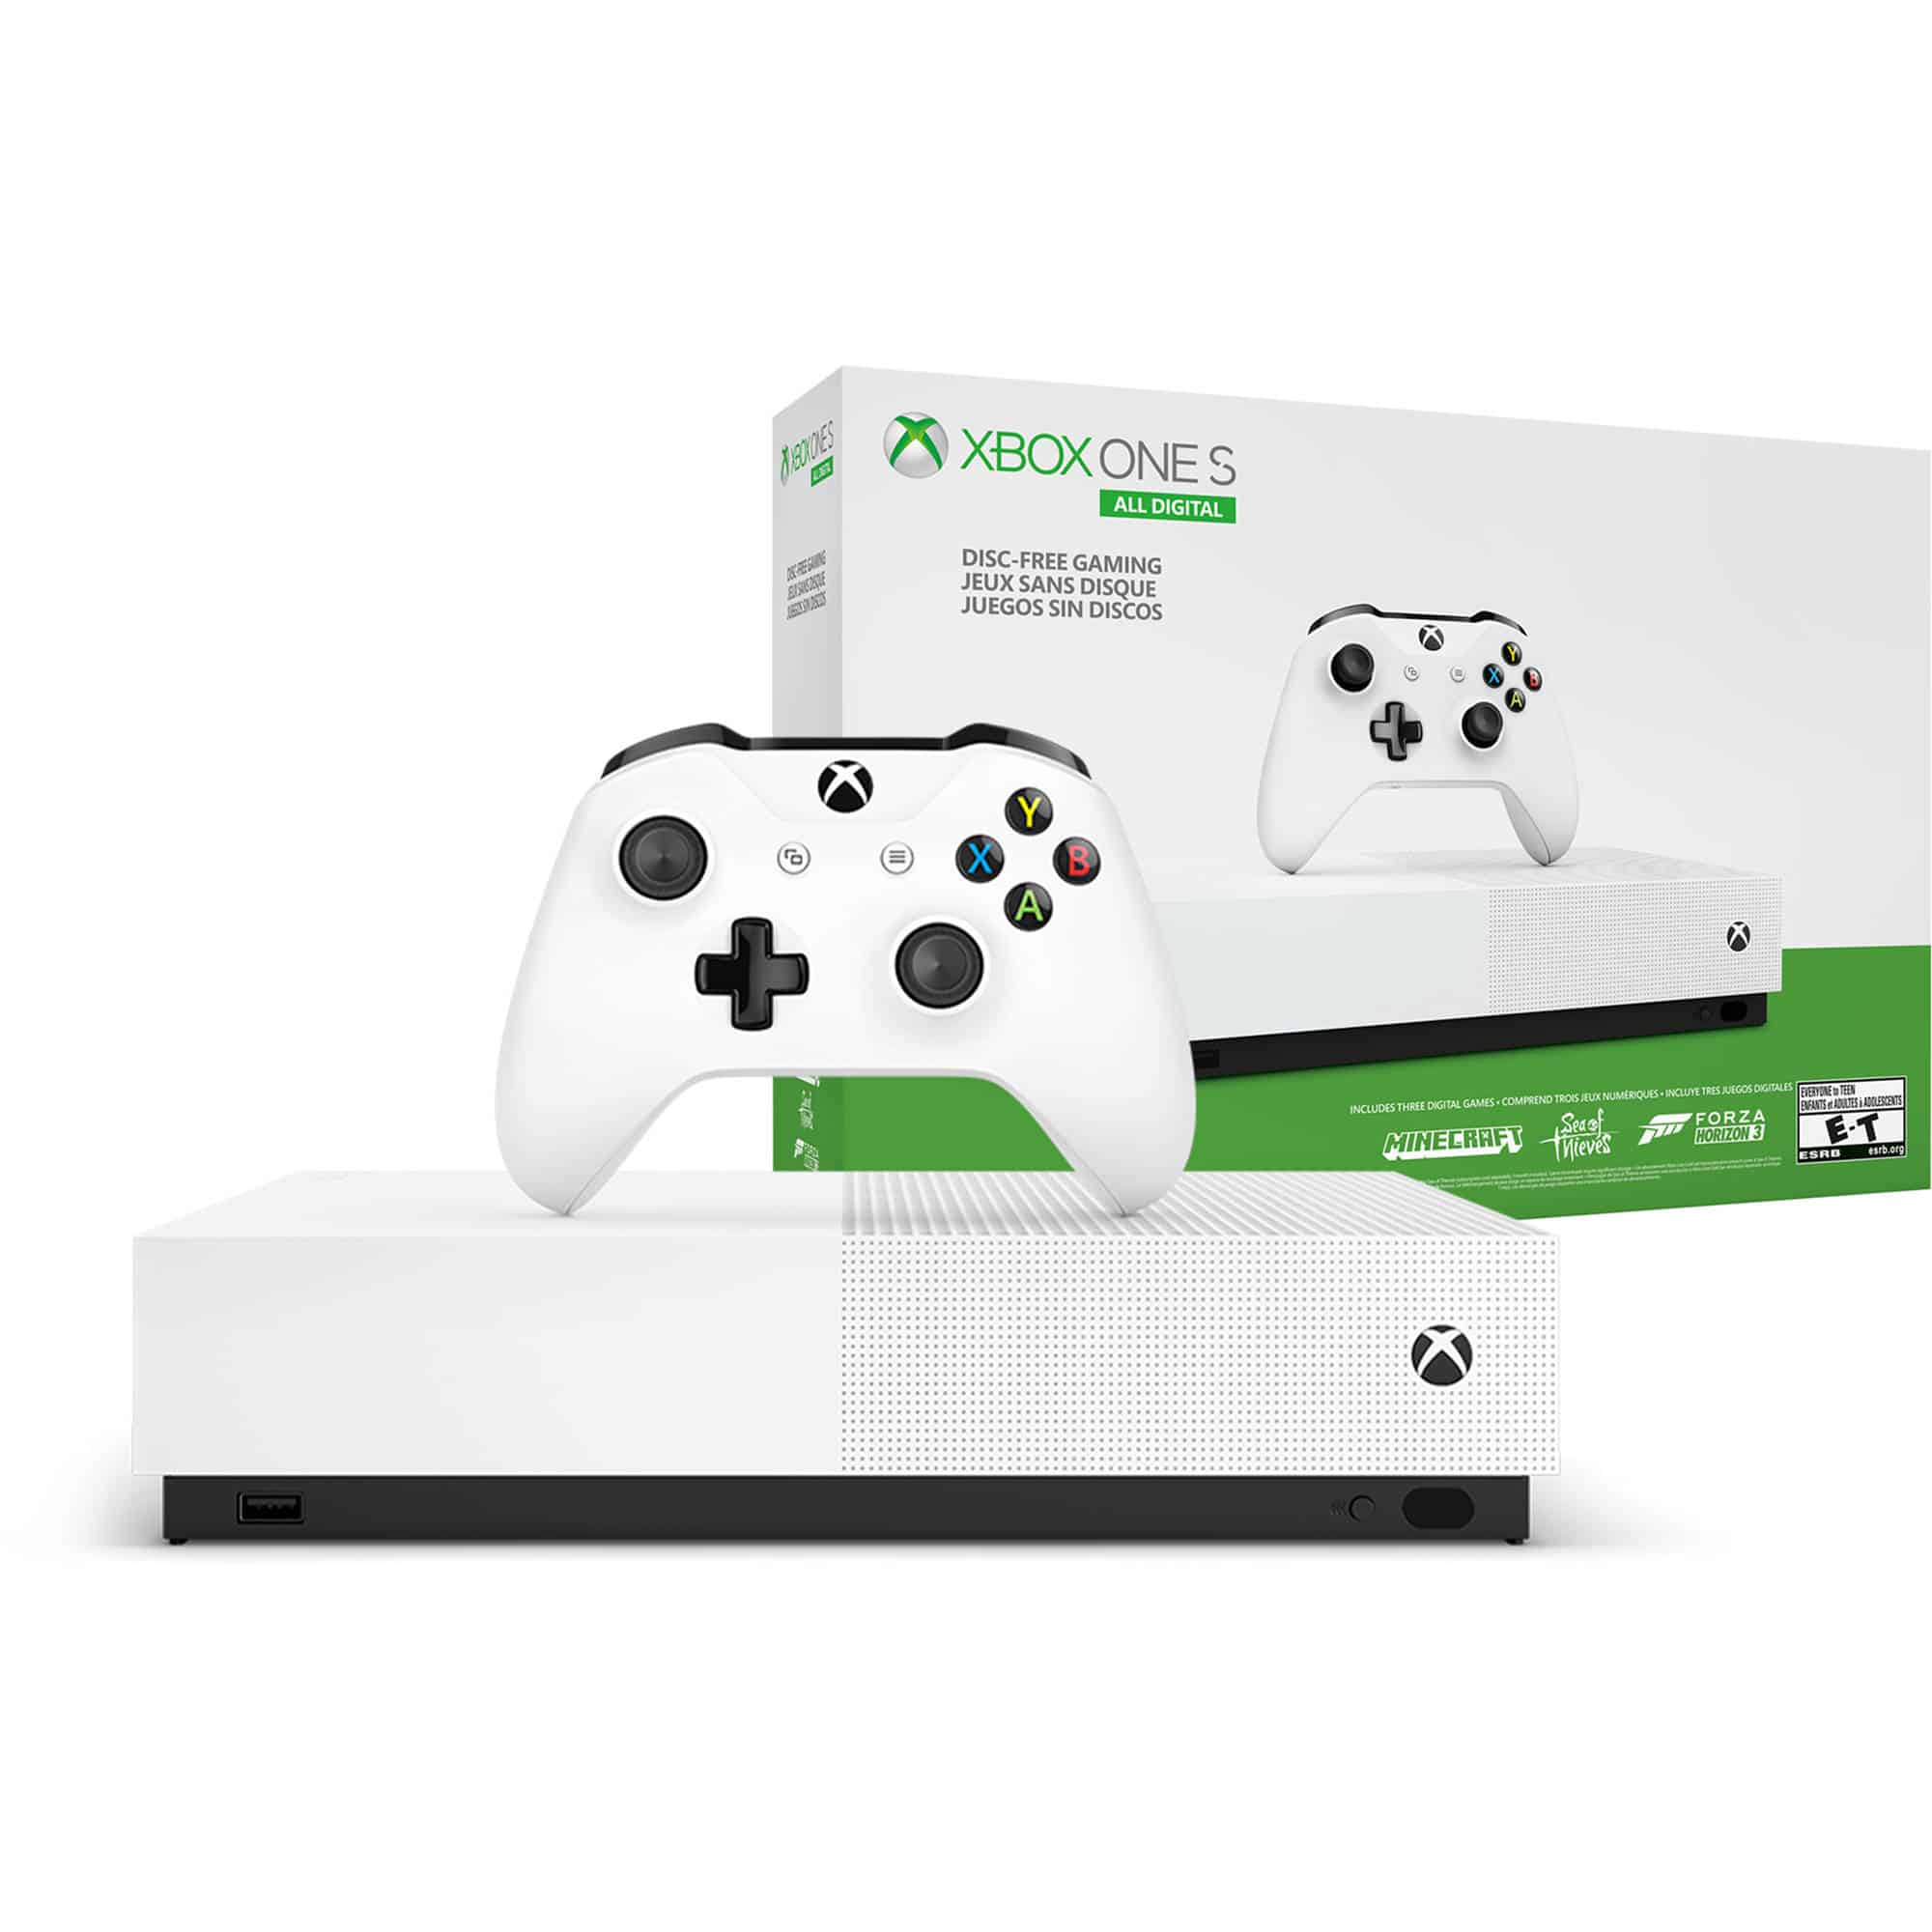 Xbox_One